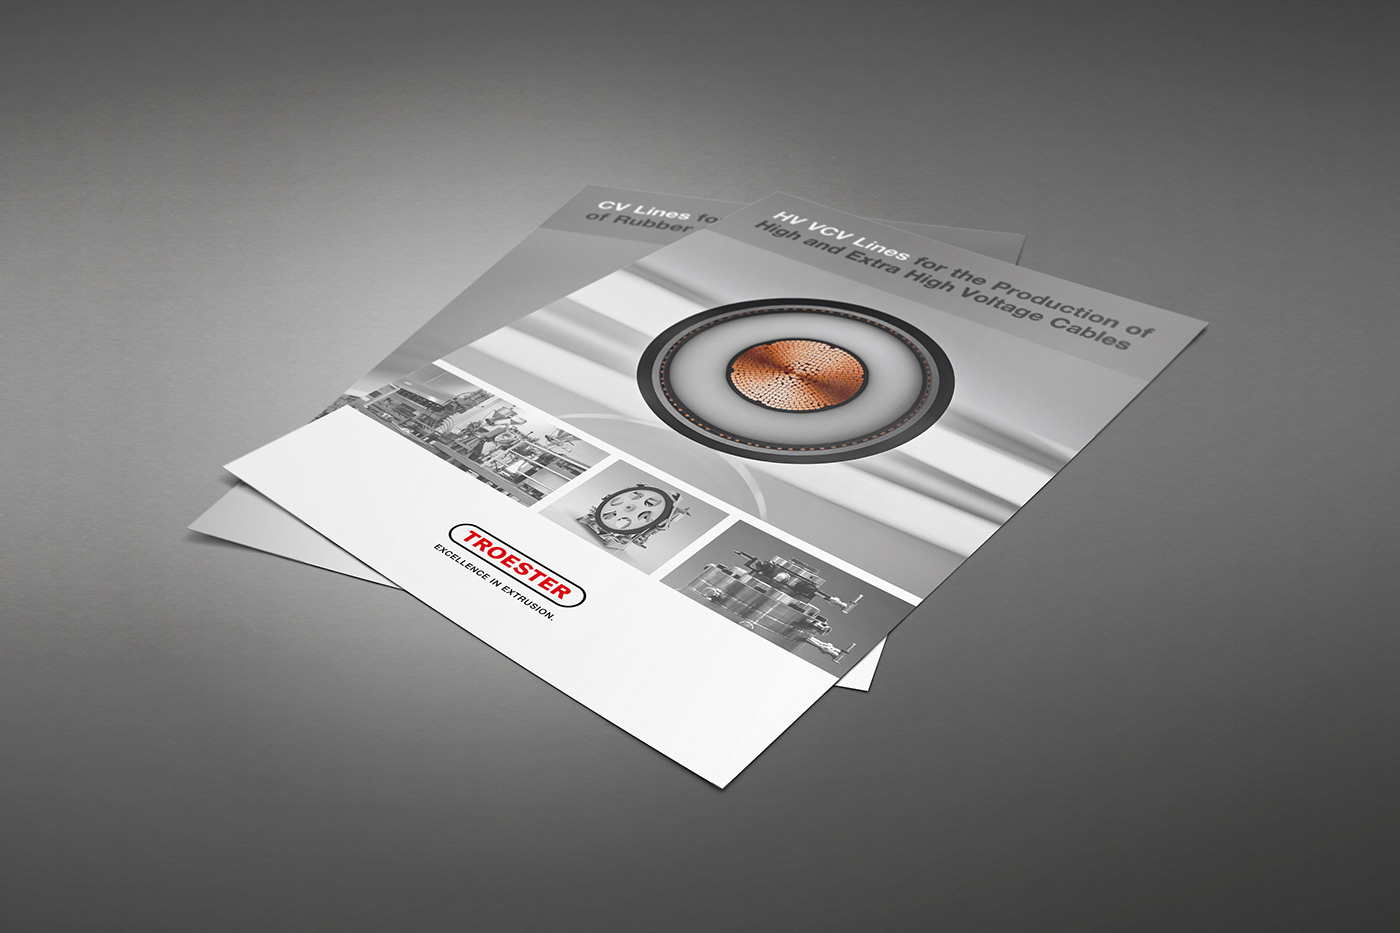 Branding design brochure Drucksachen editorial design  graphic design  print design  Product Photography rotherdesign technische kommunikation